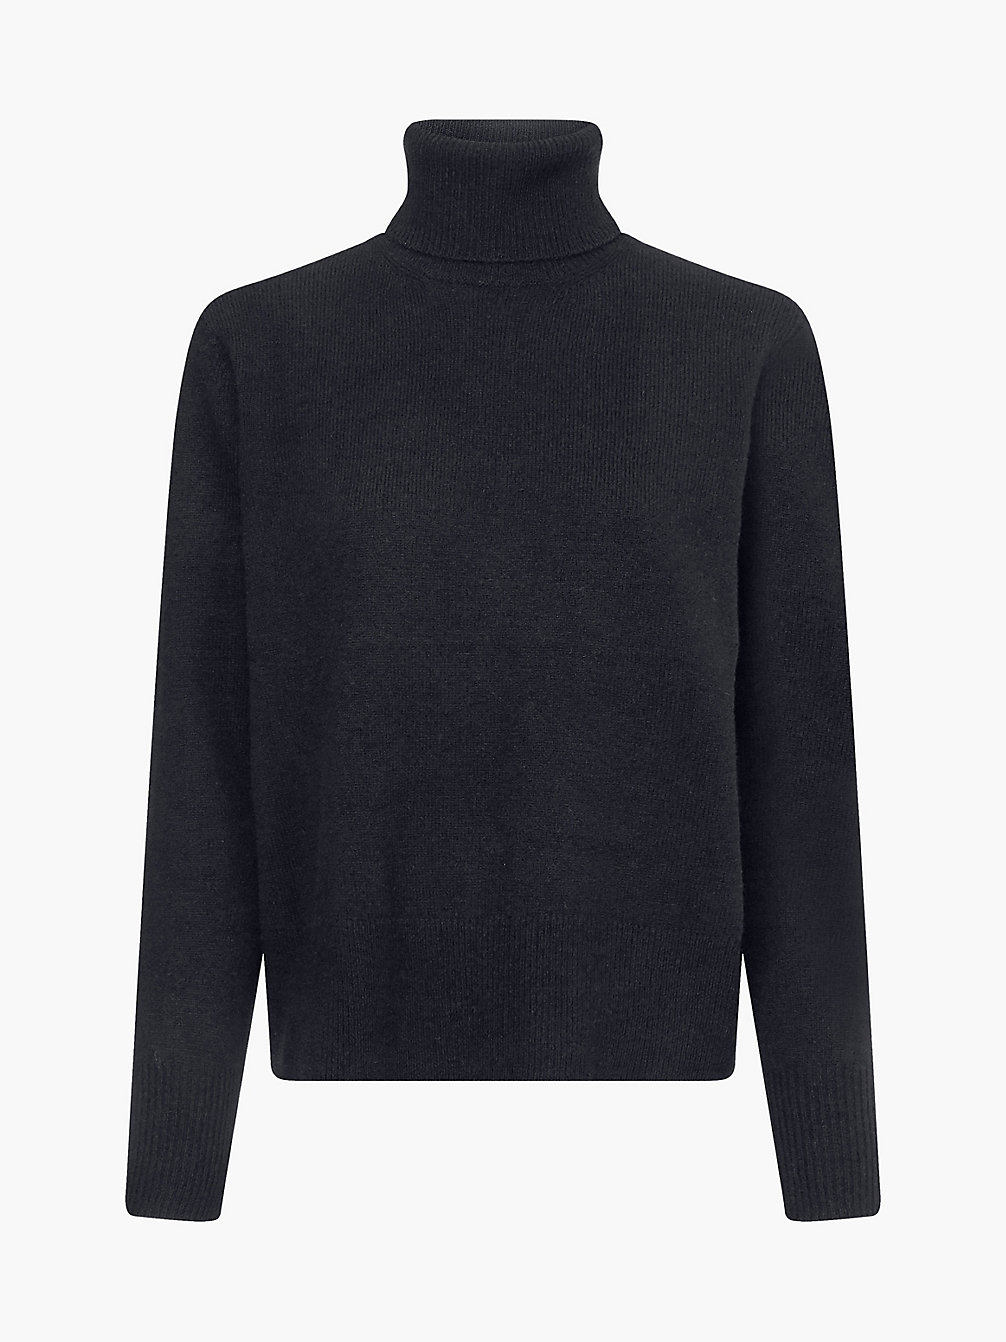 CK BLACK Pullover Mit Rollkragen Aus Recycelter Wolle undefined Damen Calvin Klein